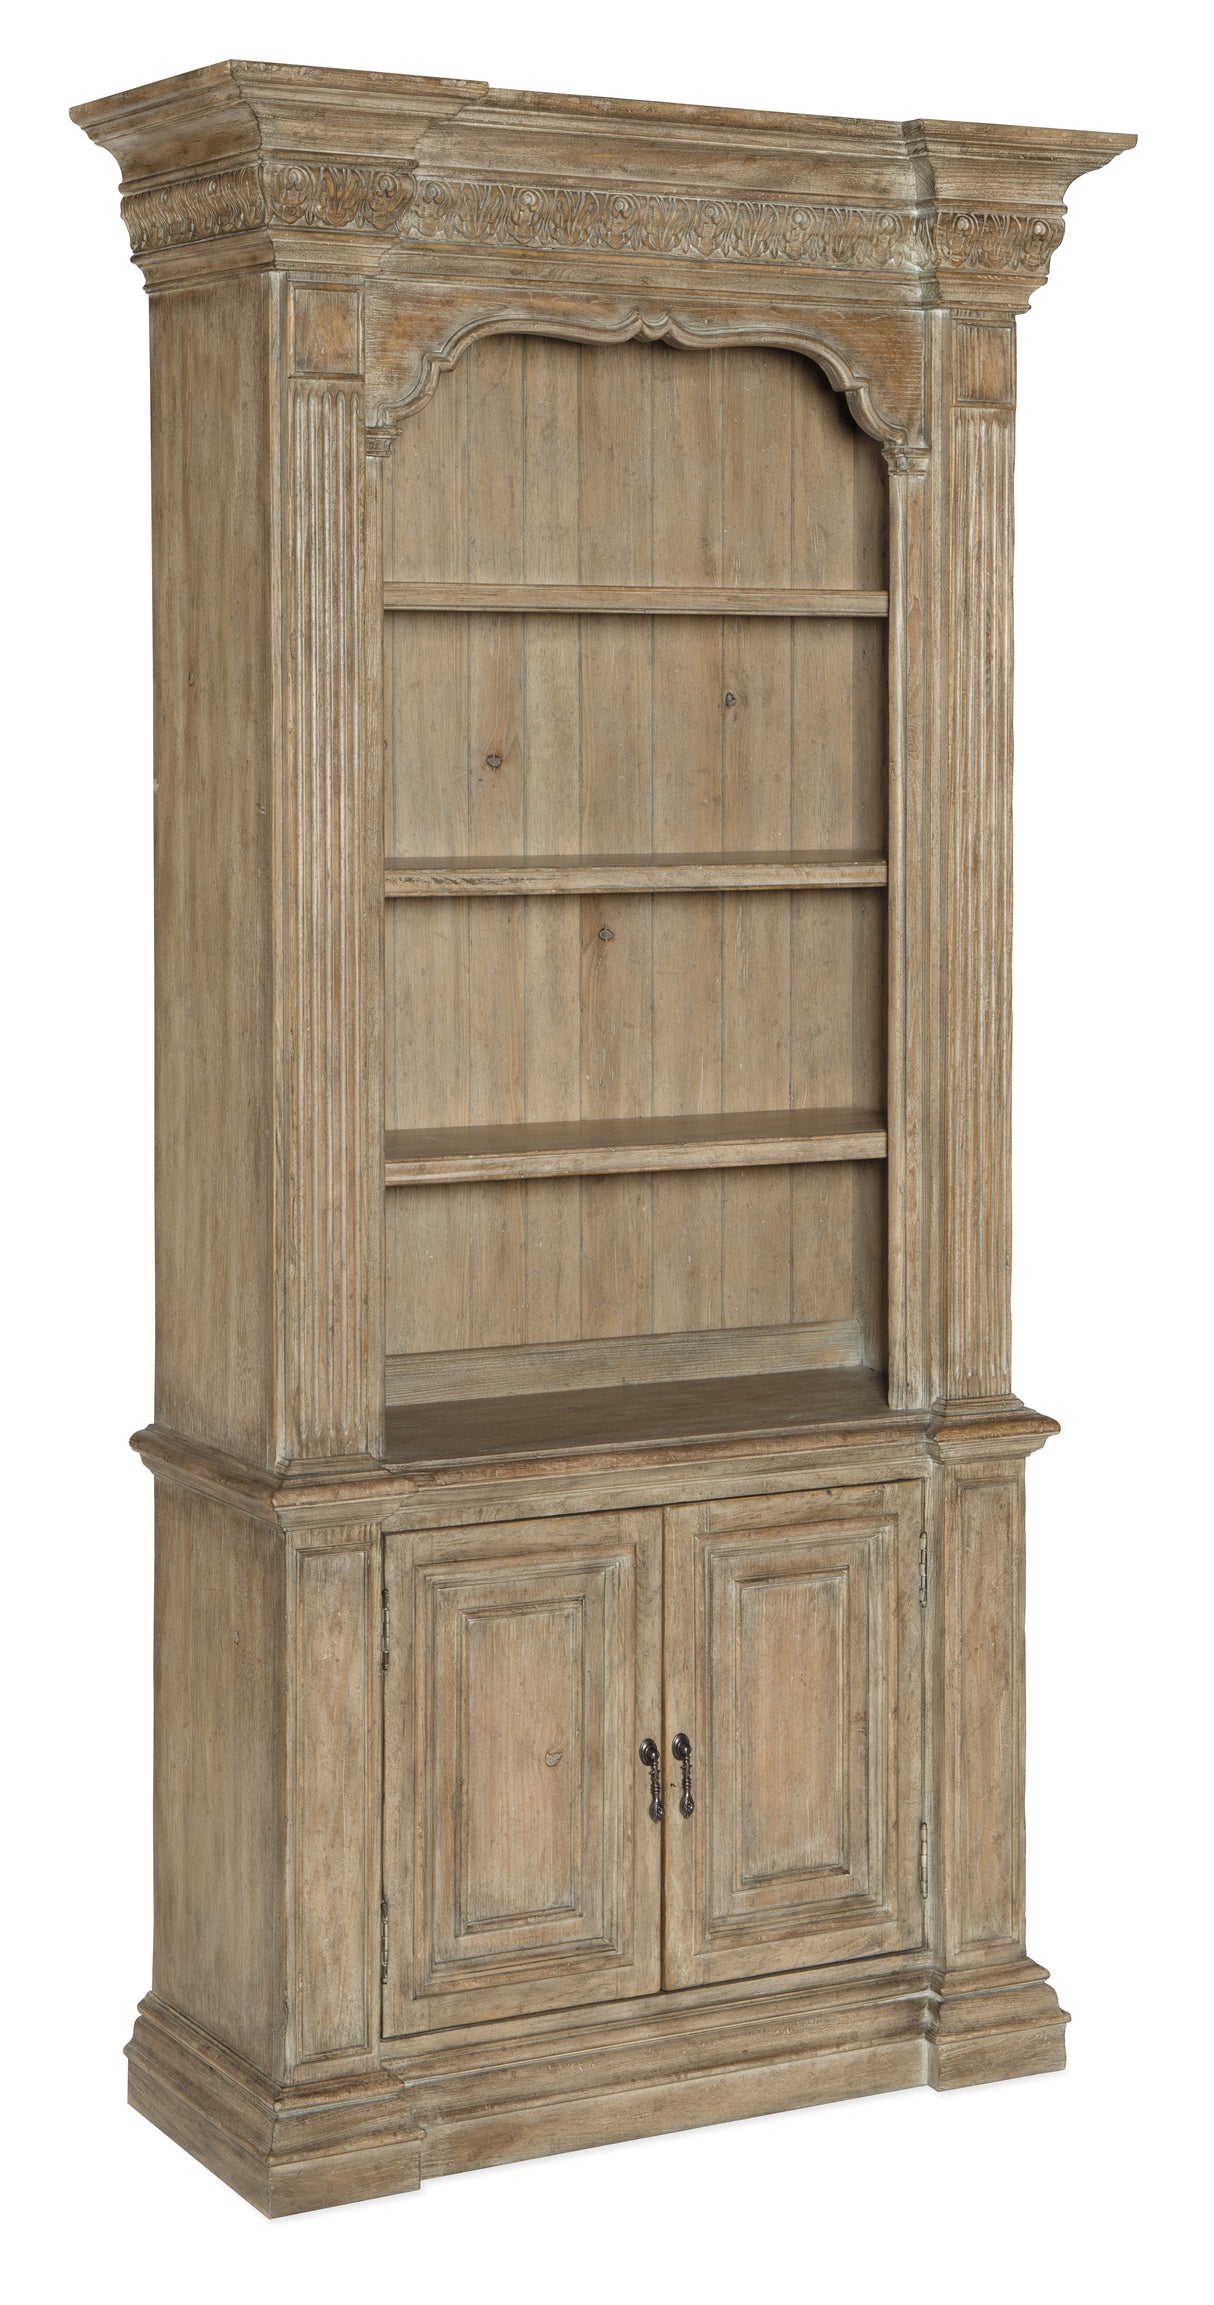 Castella - Bookcase